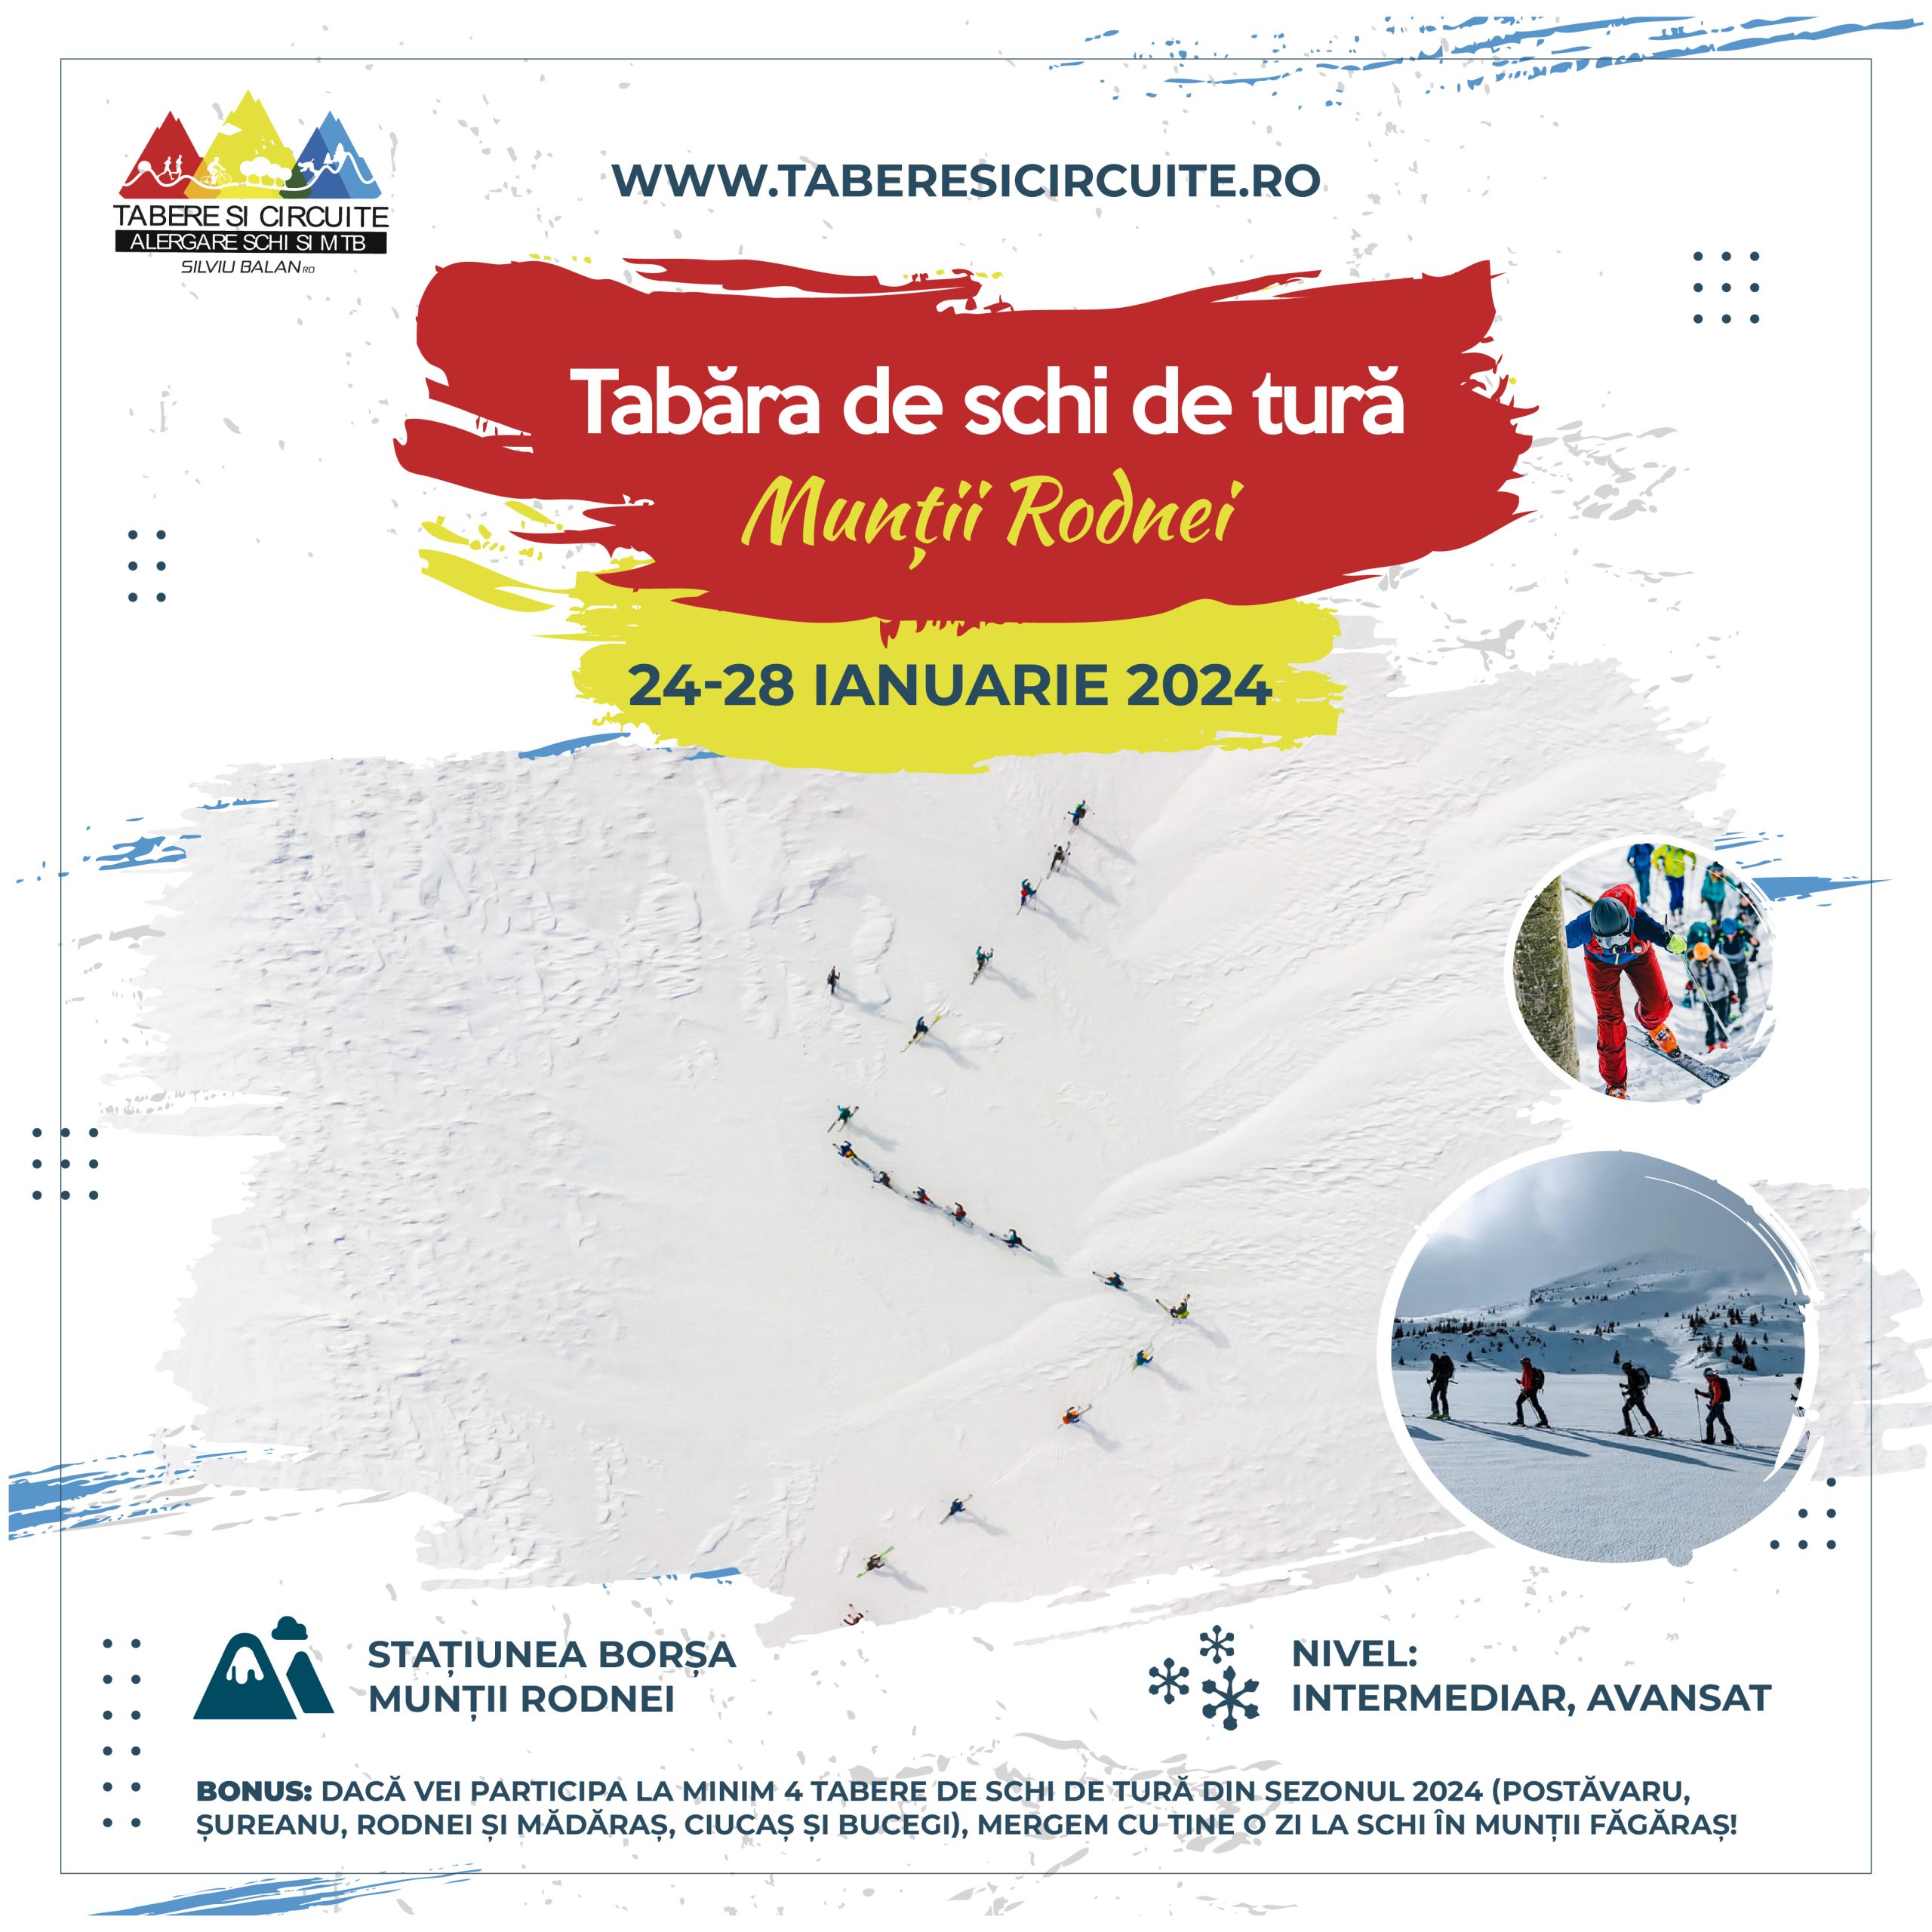 Raport: Tabără de schi de tură – Munții Rodnei 24-28 ianuarie 2024